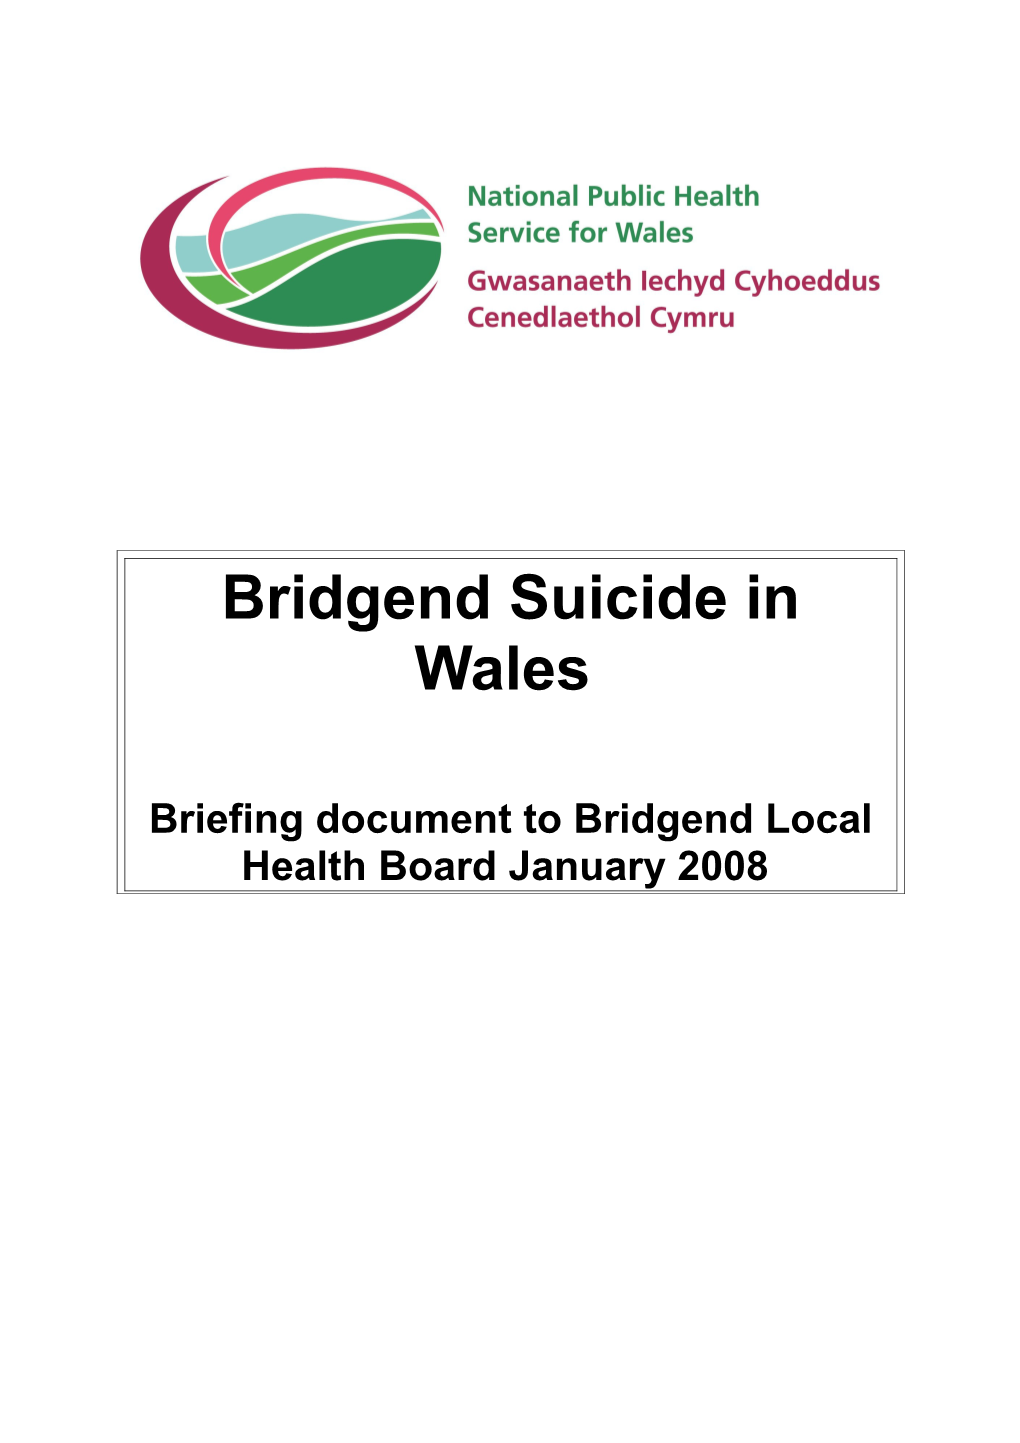 Bridgend Suicide in Wales